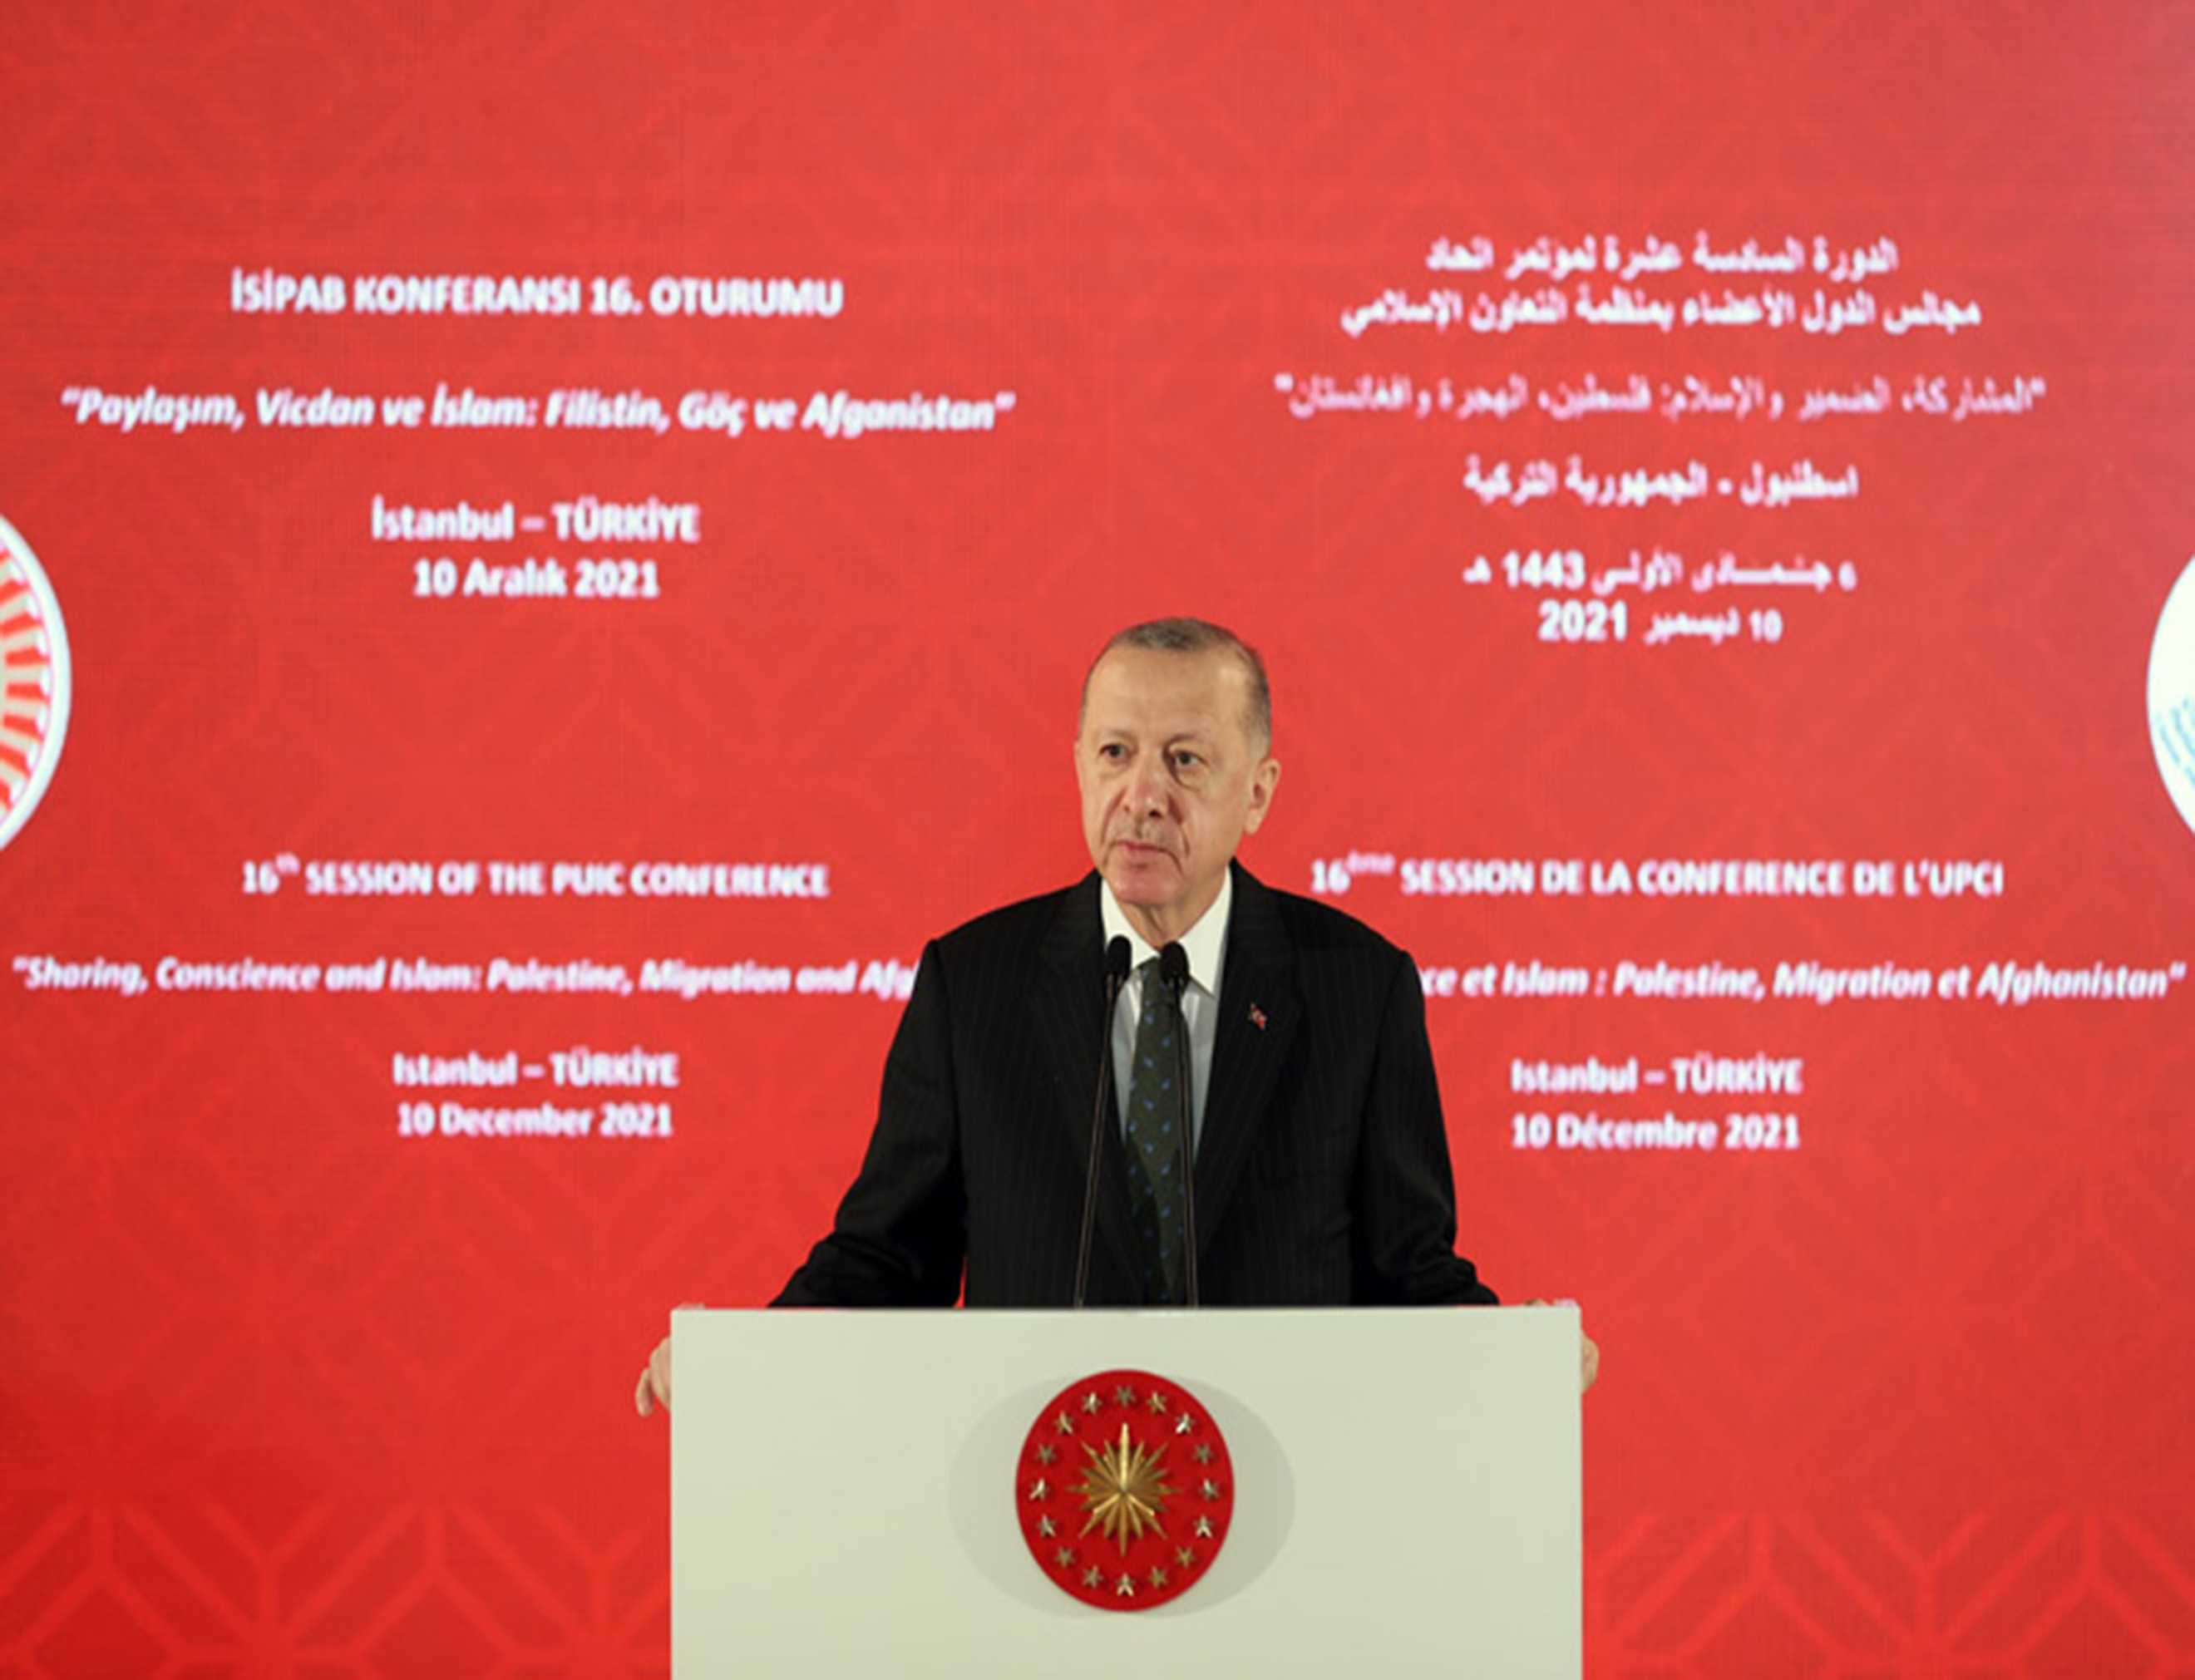 Le Président Erdogan Inaugure la 16e Conférence de l